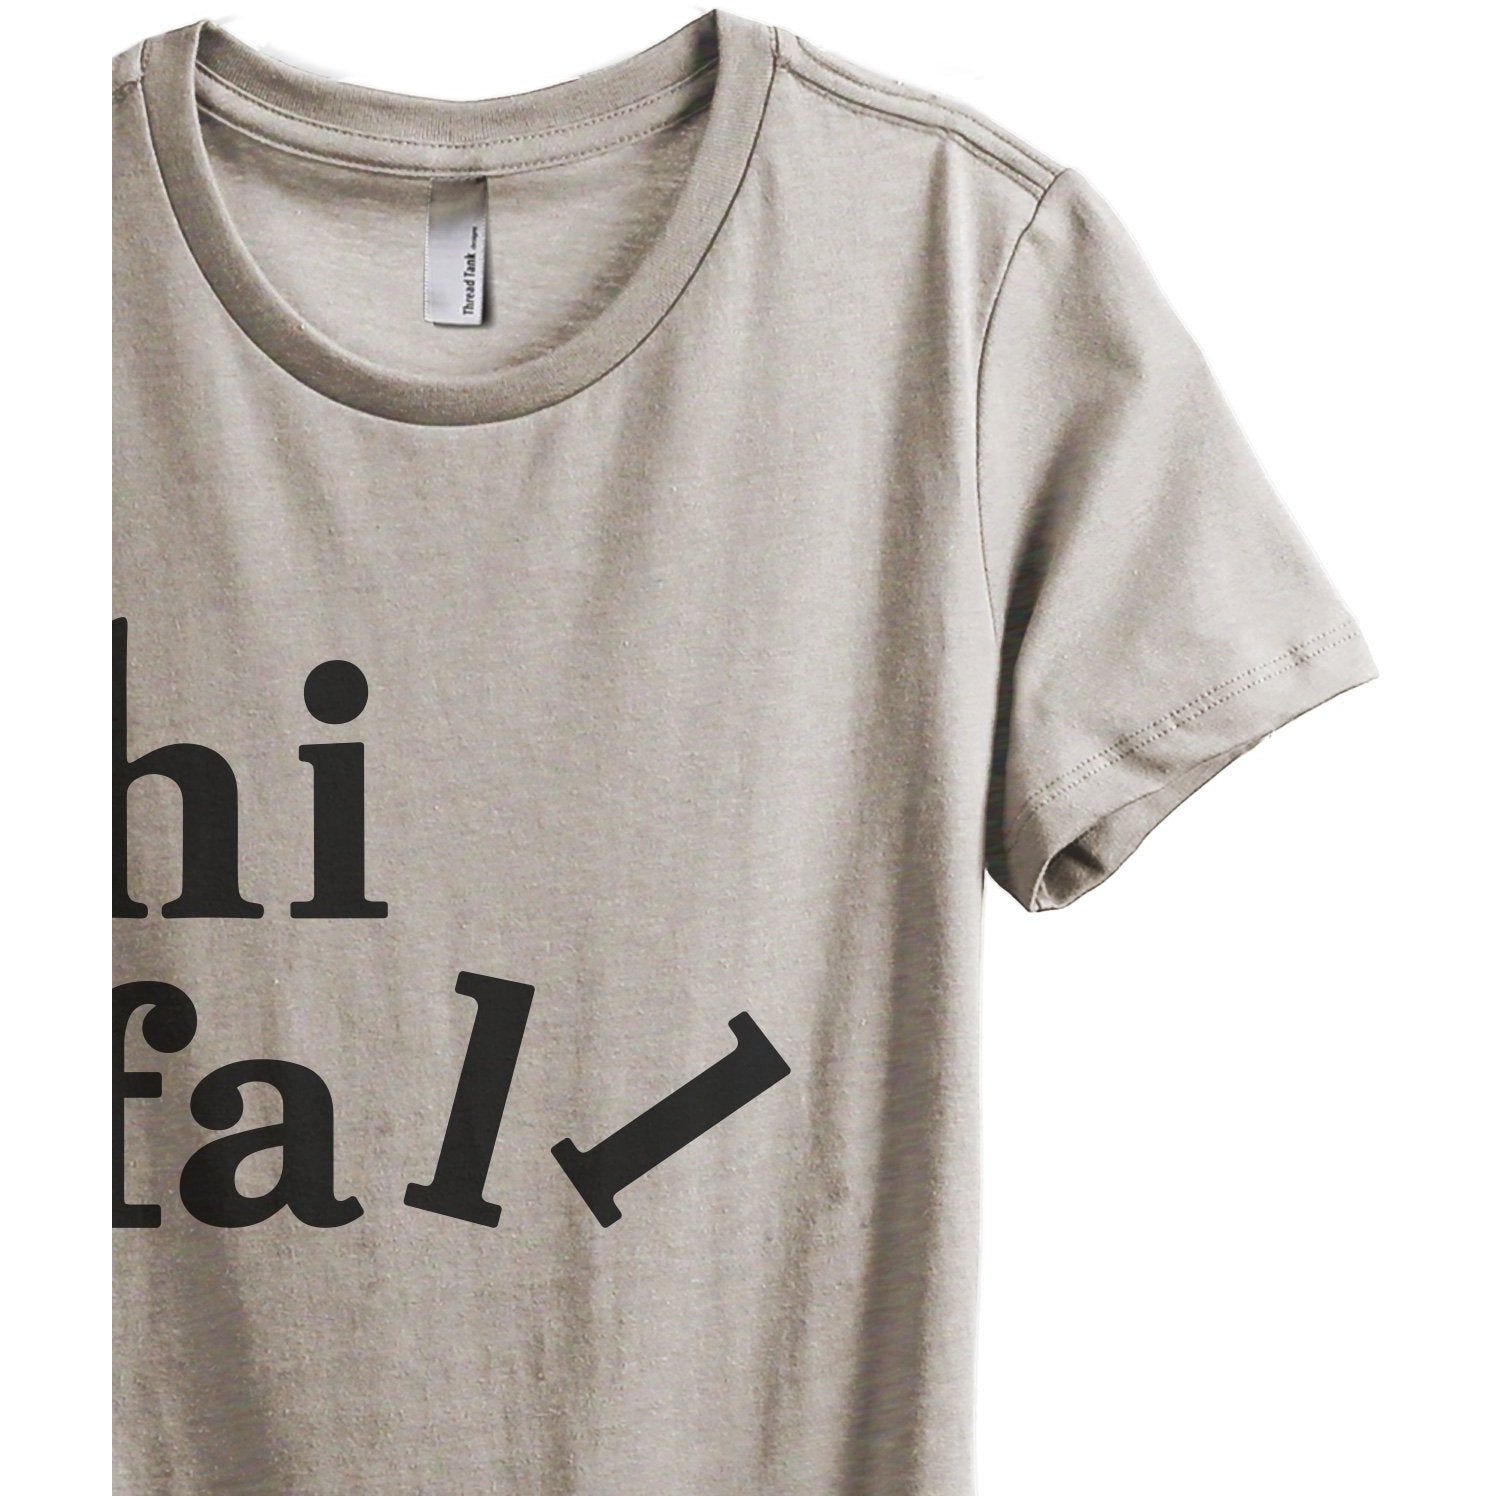 Hi Fall Women's Relaxed Crewneck T-Shirt Top Tee Heather Tan Grey
